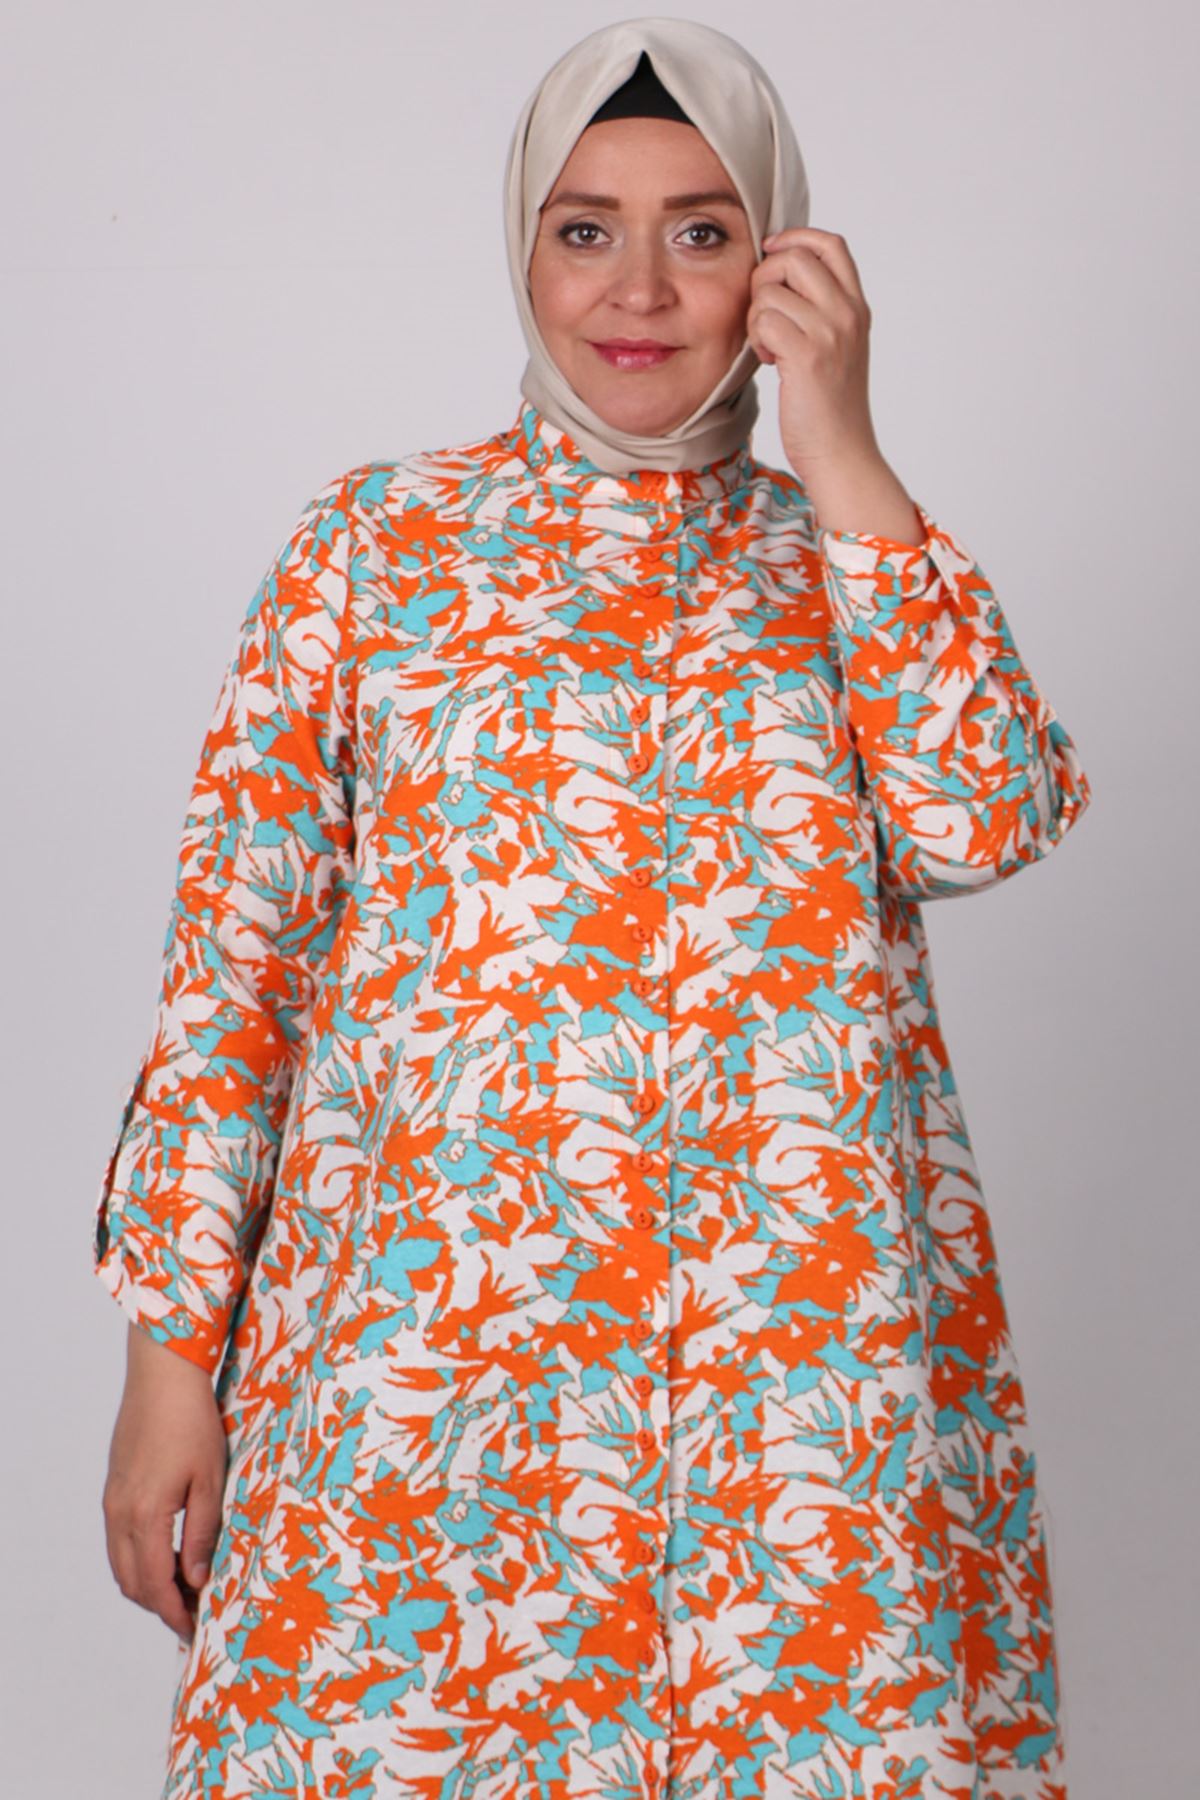 38074 Large Size Buttoned Patterned Linen Shirt -Leaf Pattern Orange